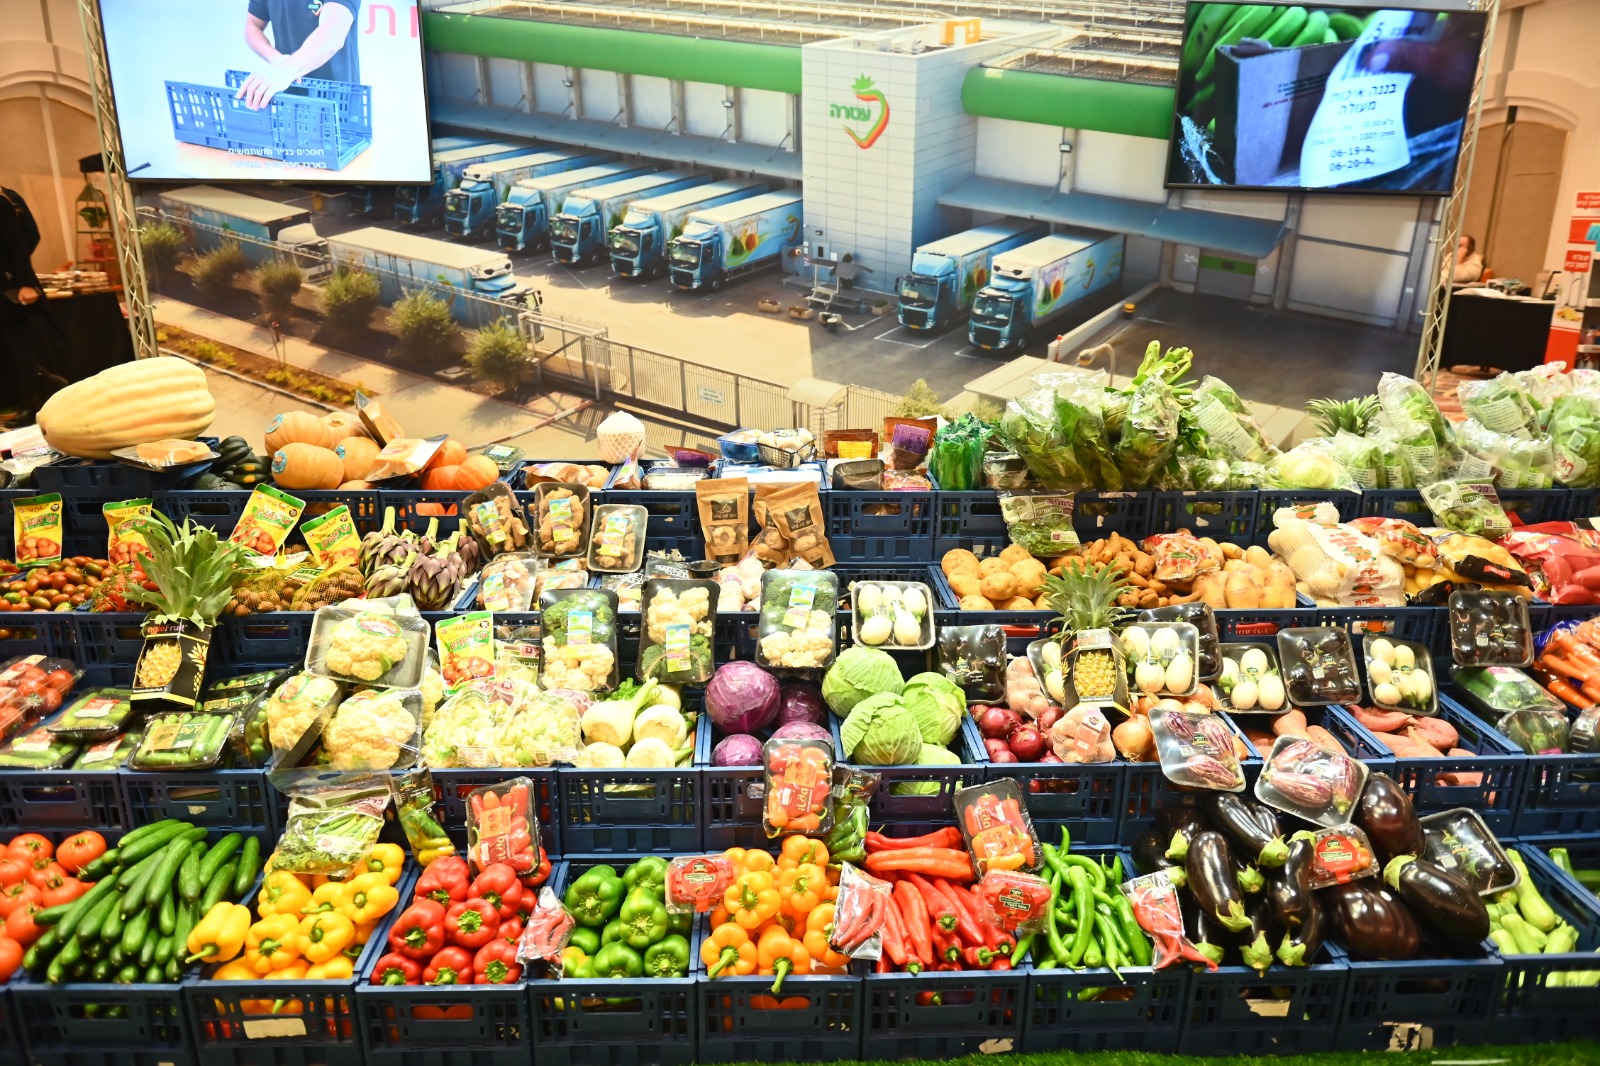 ירקות בשיווק חברת "עטרה" בתצוגה בכנס המזון